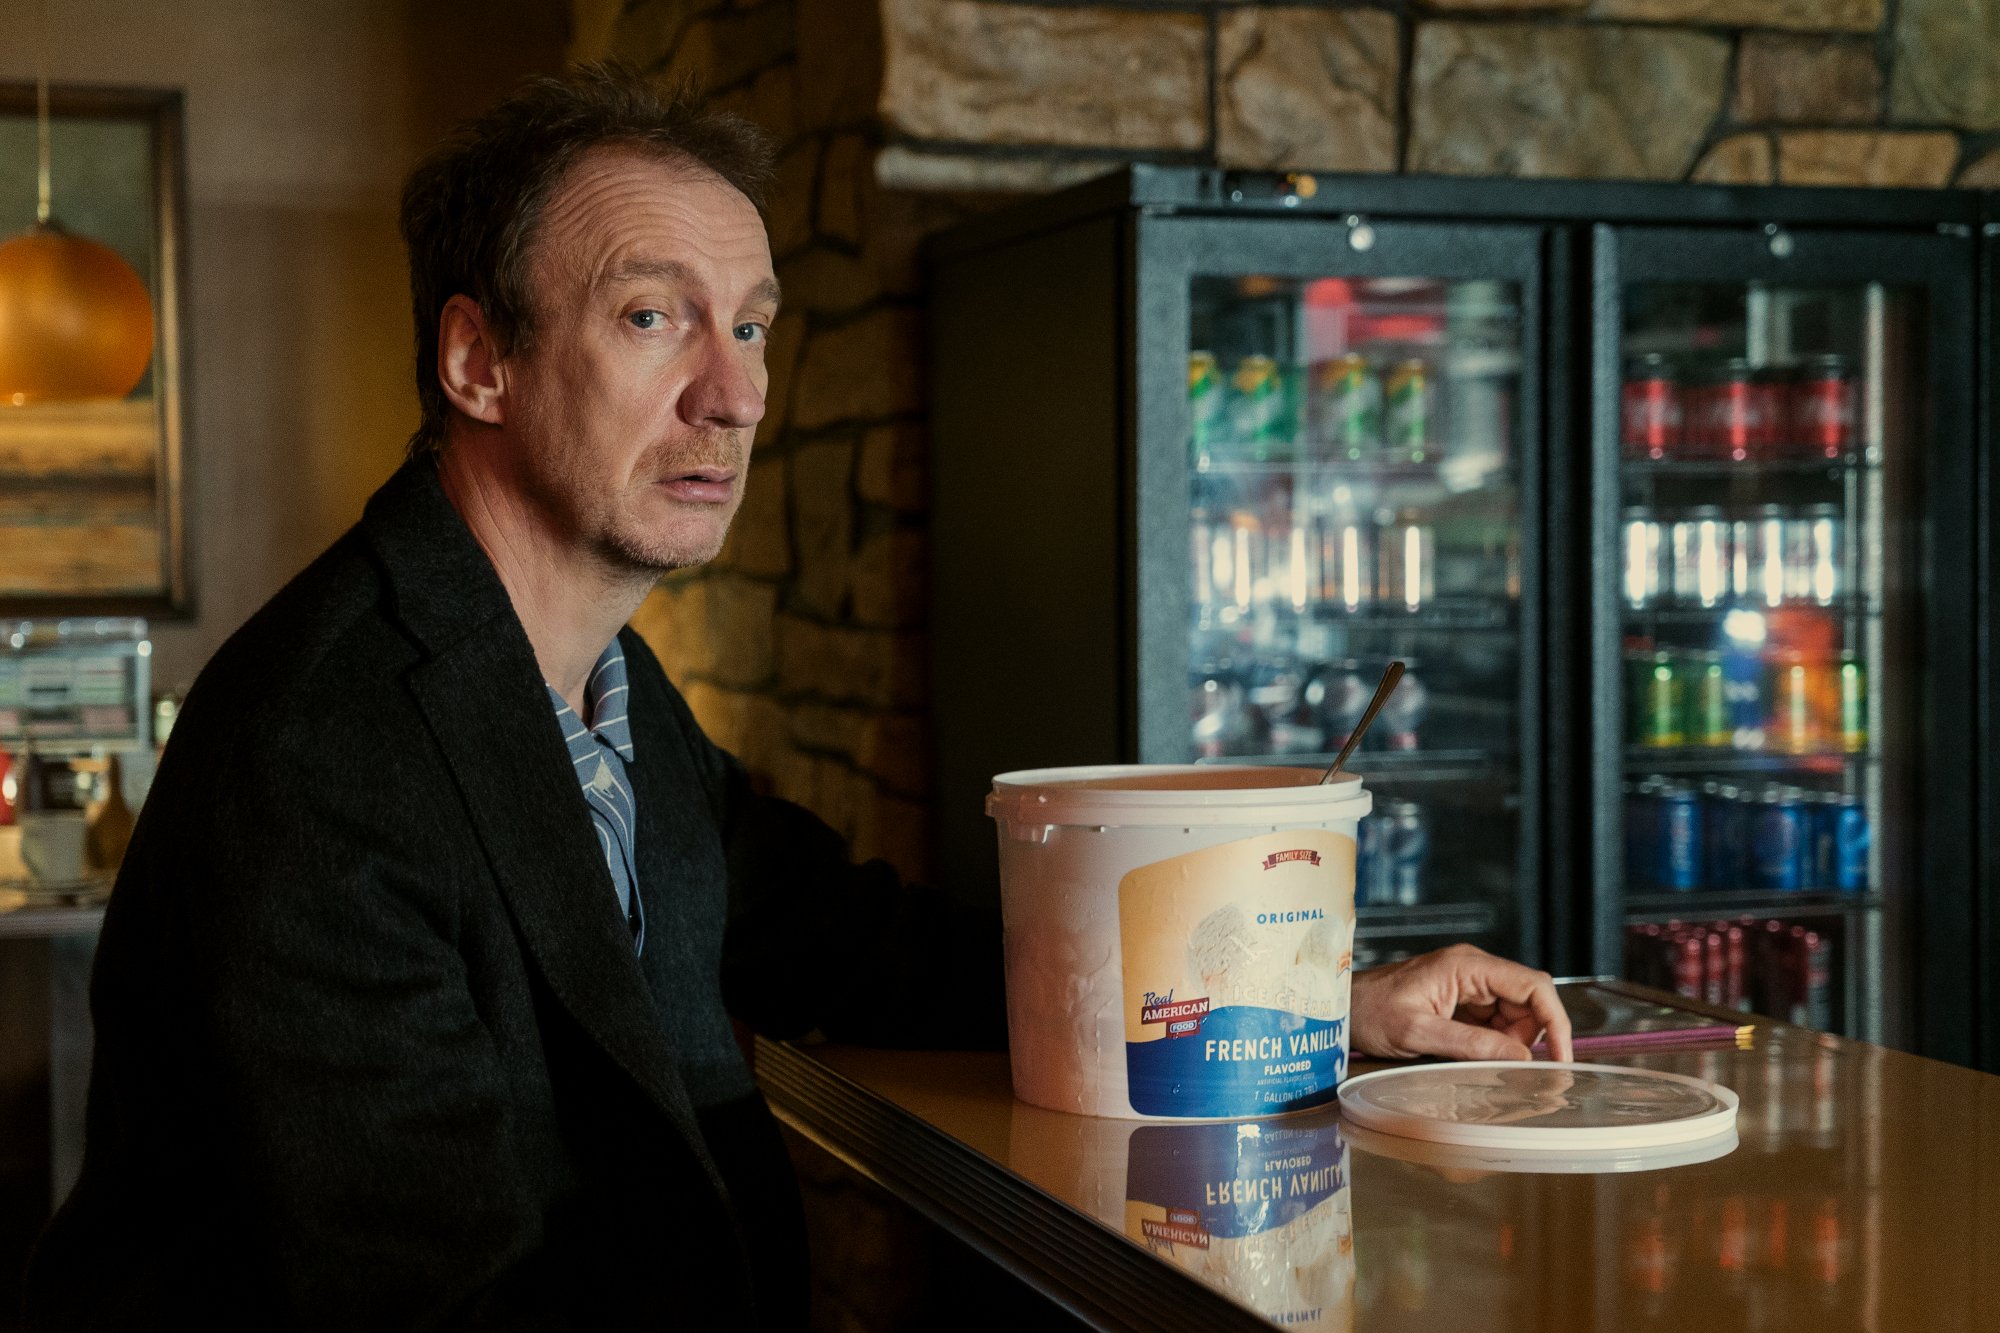 Netflixの「サンドマン」に出演する俳優のデヴィッド・シューリス。 彼はカウンターに座っていて、目の前にアイスクリームの入った桶があります。